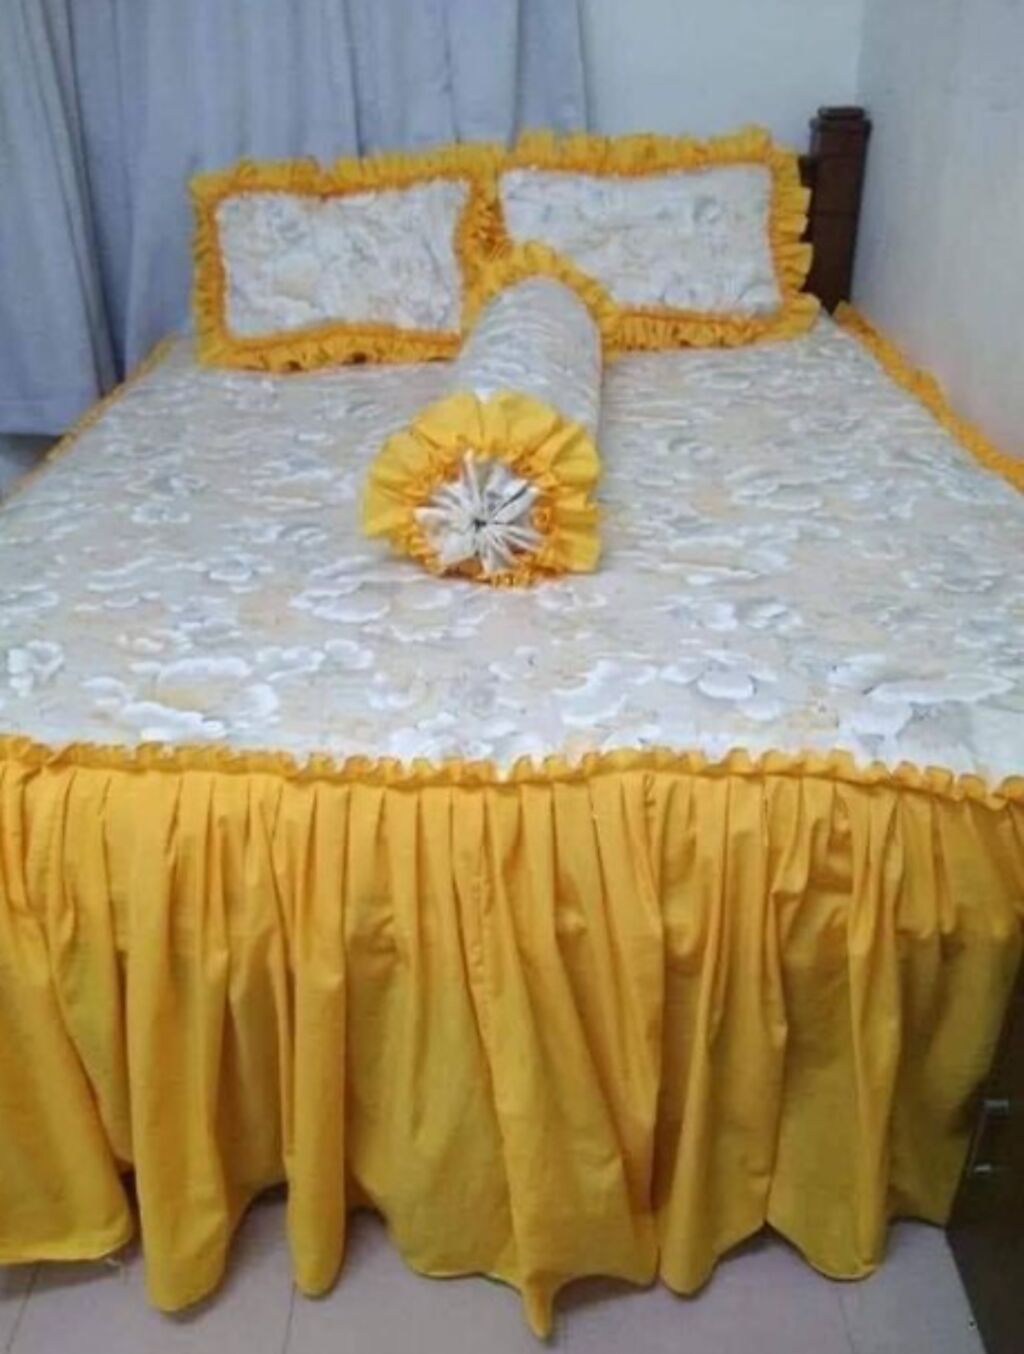 先前也有另名網友買了新的床單、枕頭套，但款式是白花花的底，配上鮮黃色波浪邊緣，讓他看了直呼「怎麼覺得怪怪的」。（翻攝自臉書「爆廢公社公開版」）